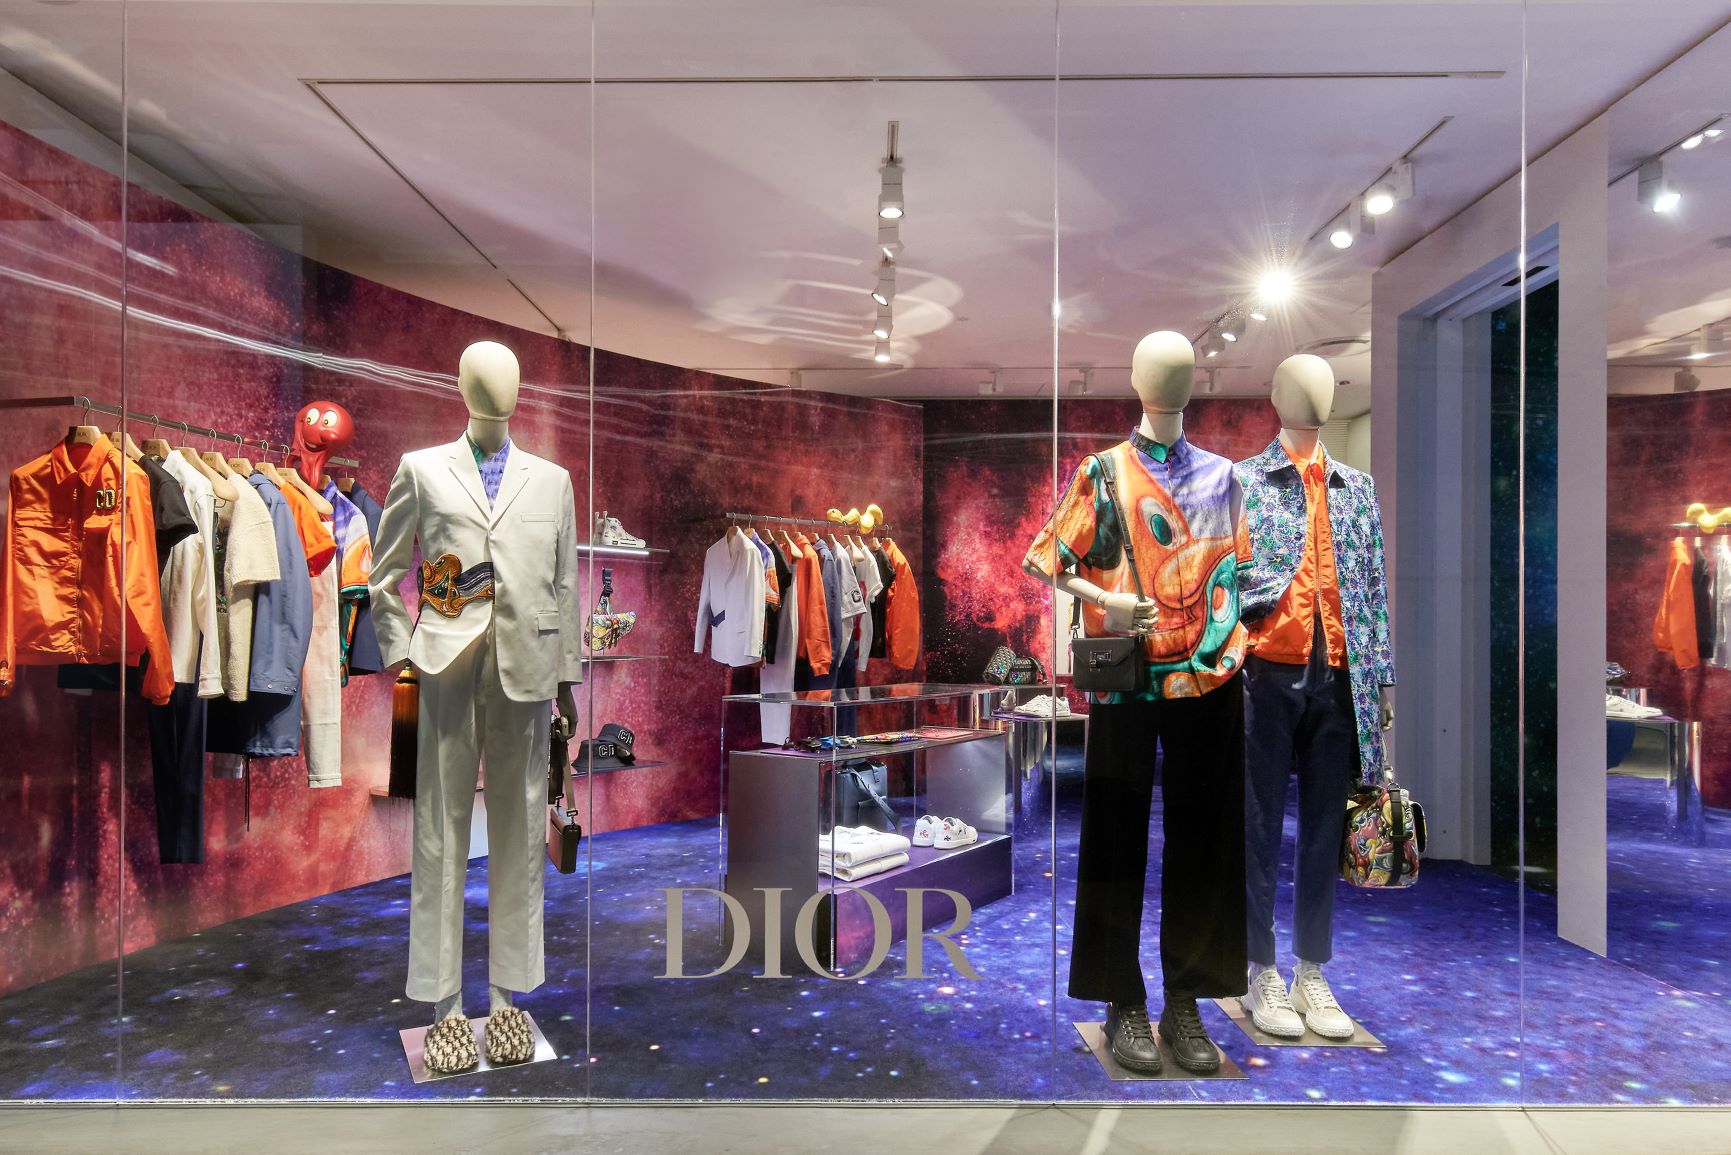 Dior フォール 21 メンズ コレクションのポップアップストアがミヤシタパークにオープン クリスチャン ディオール株式会社のプレスリリース